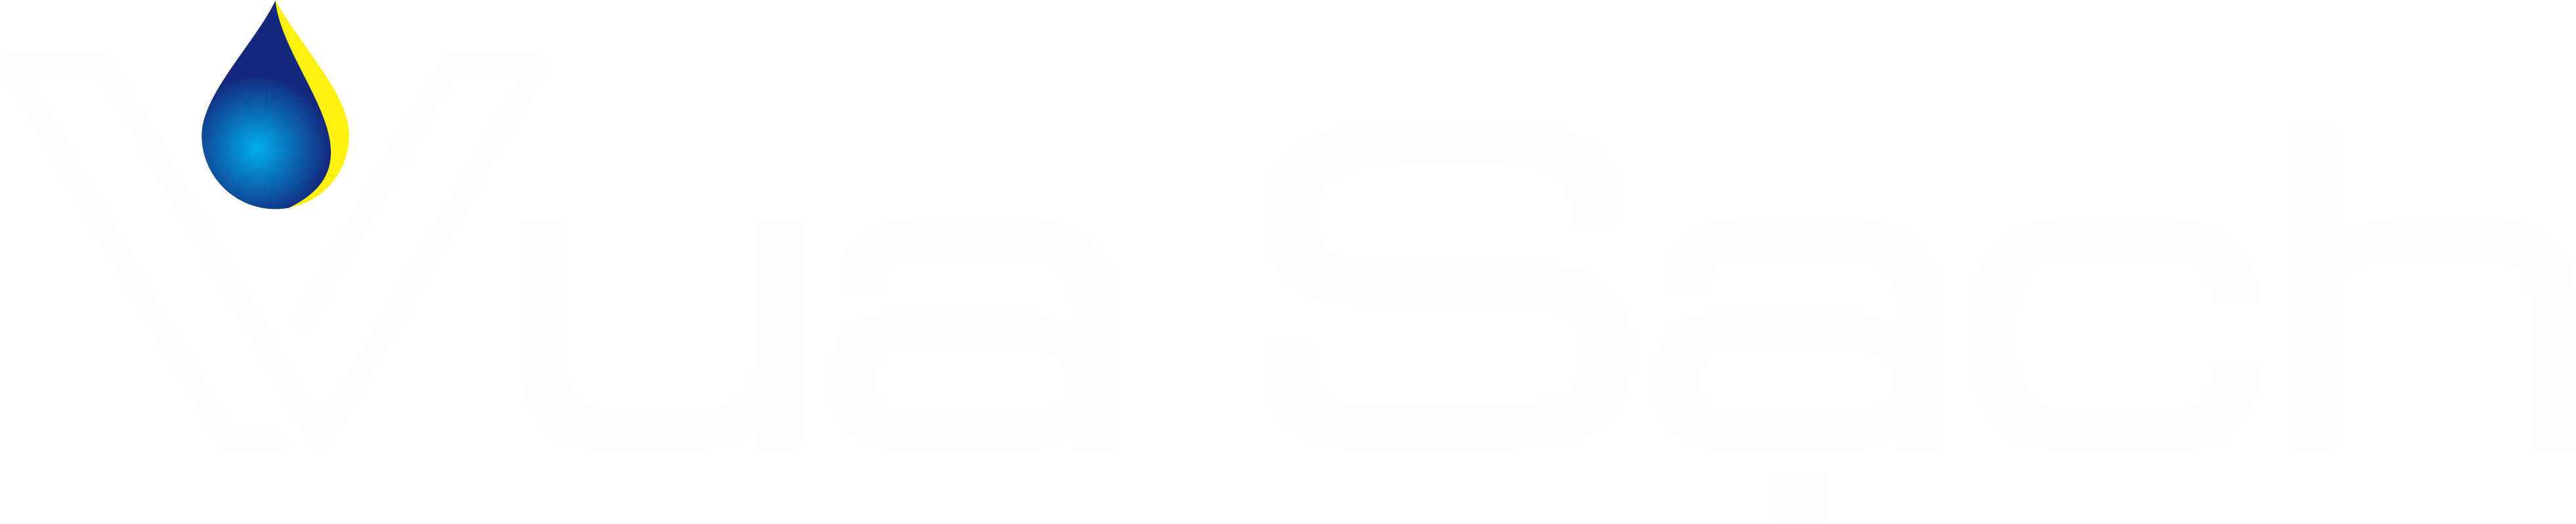 vua-sach-footer-logo